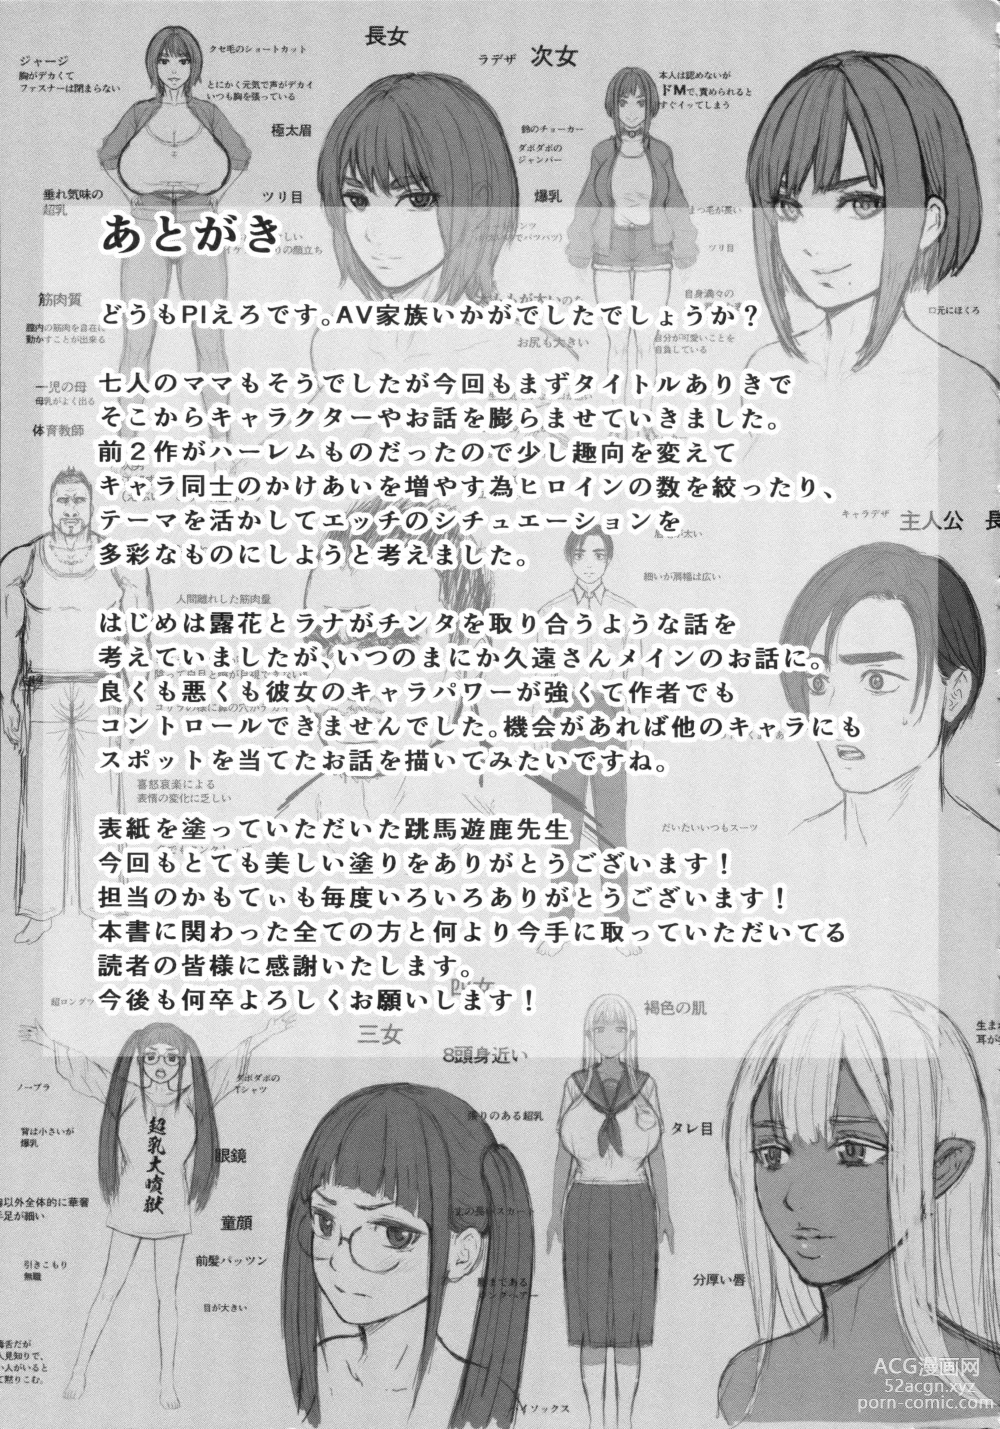 Page 222 of manga AV Family + bonuses